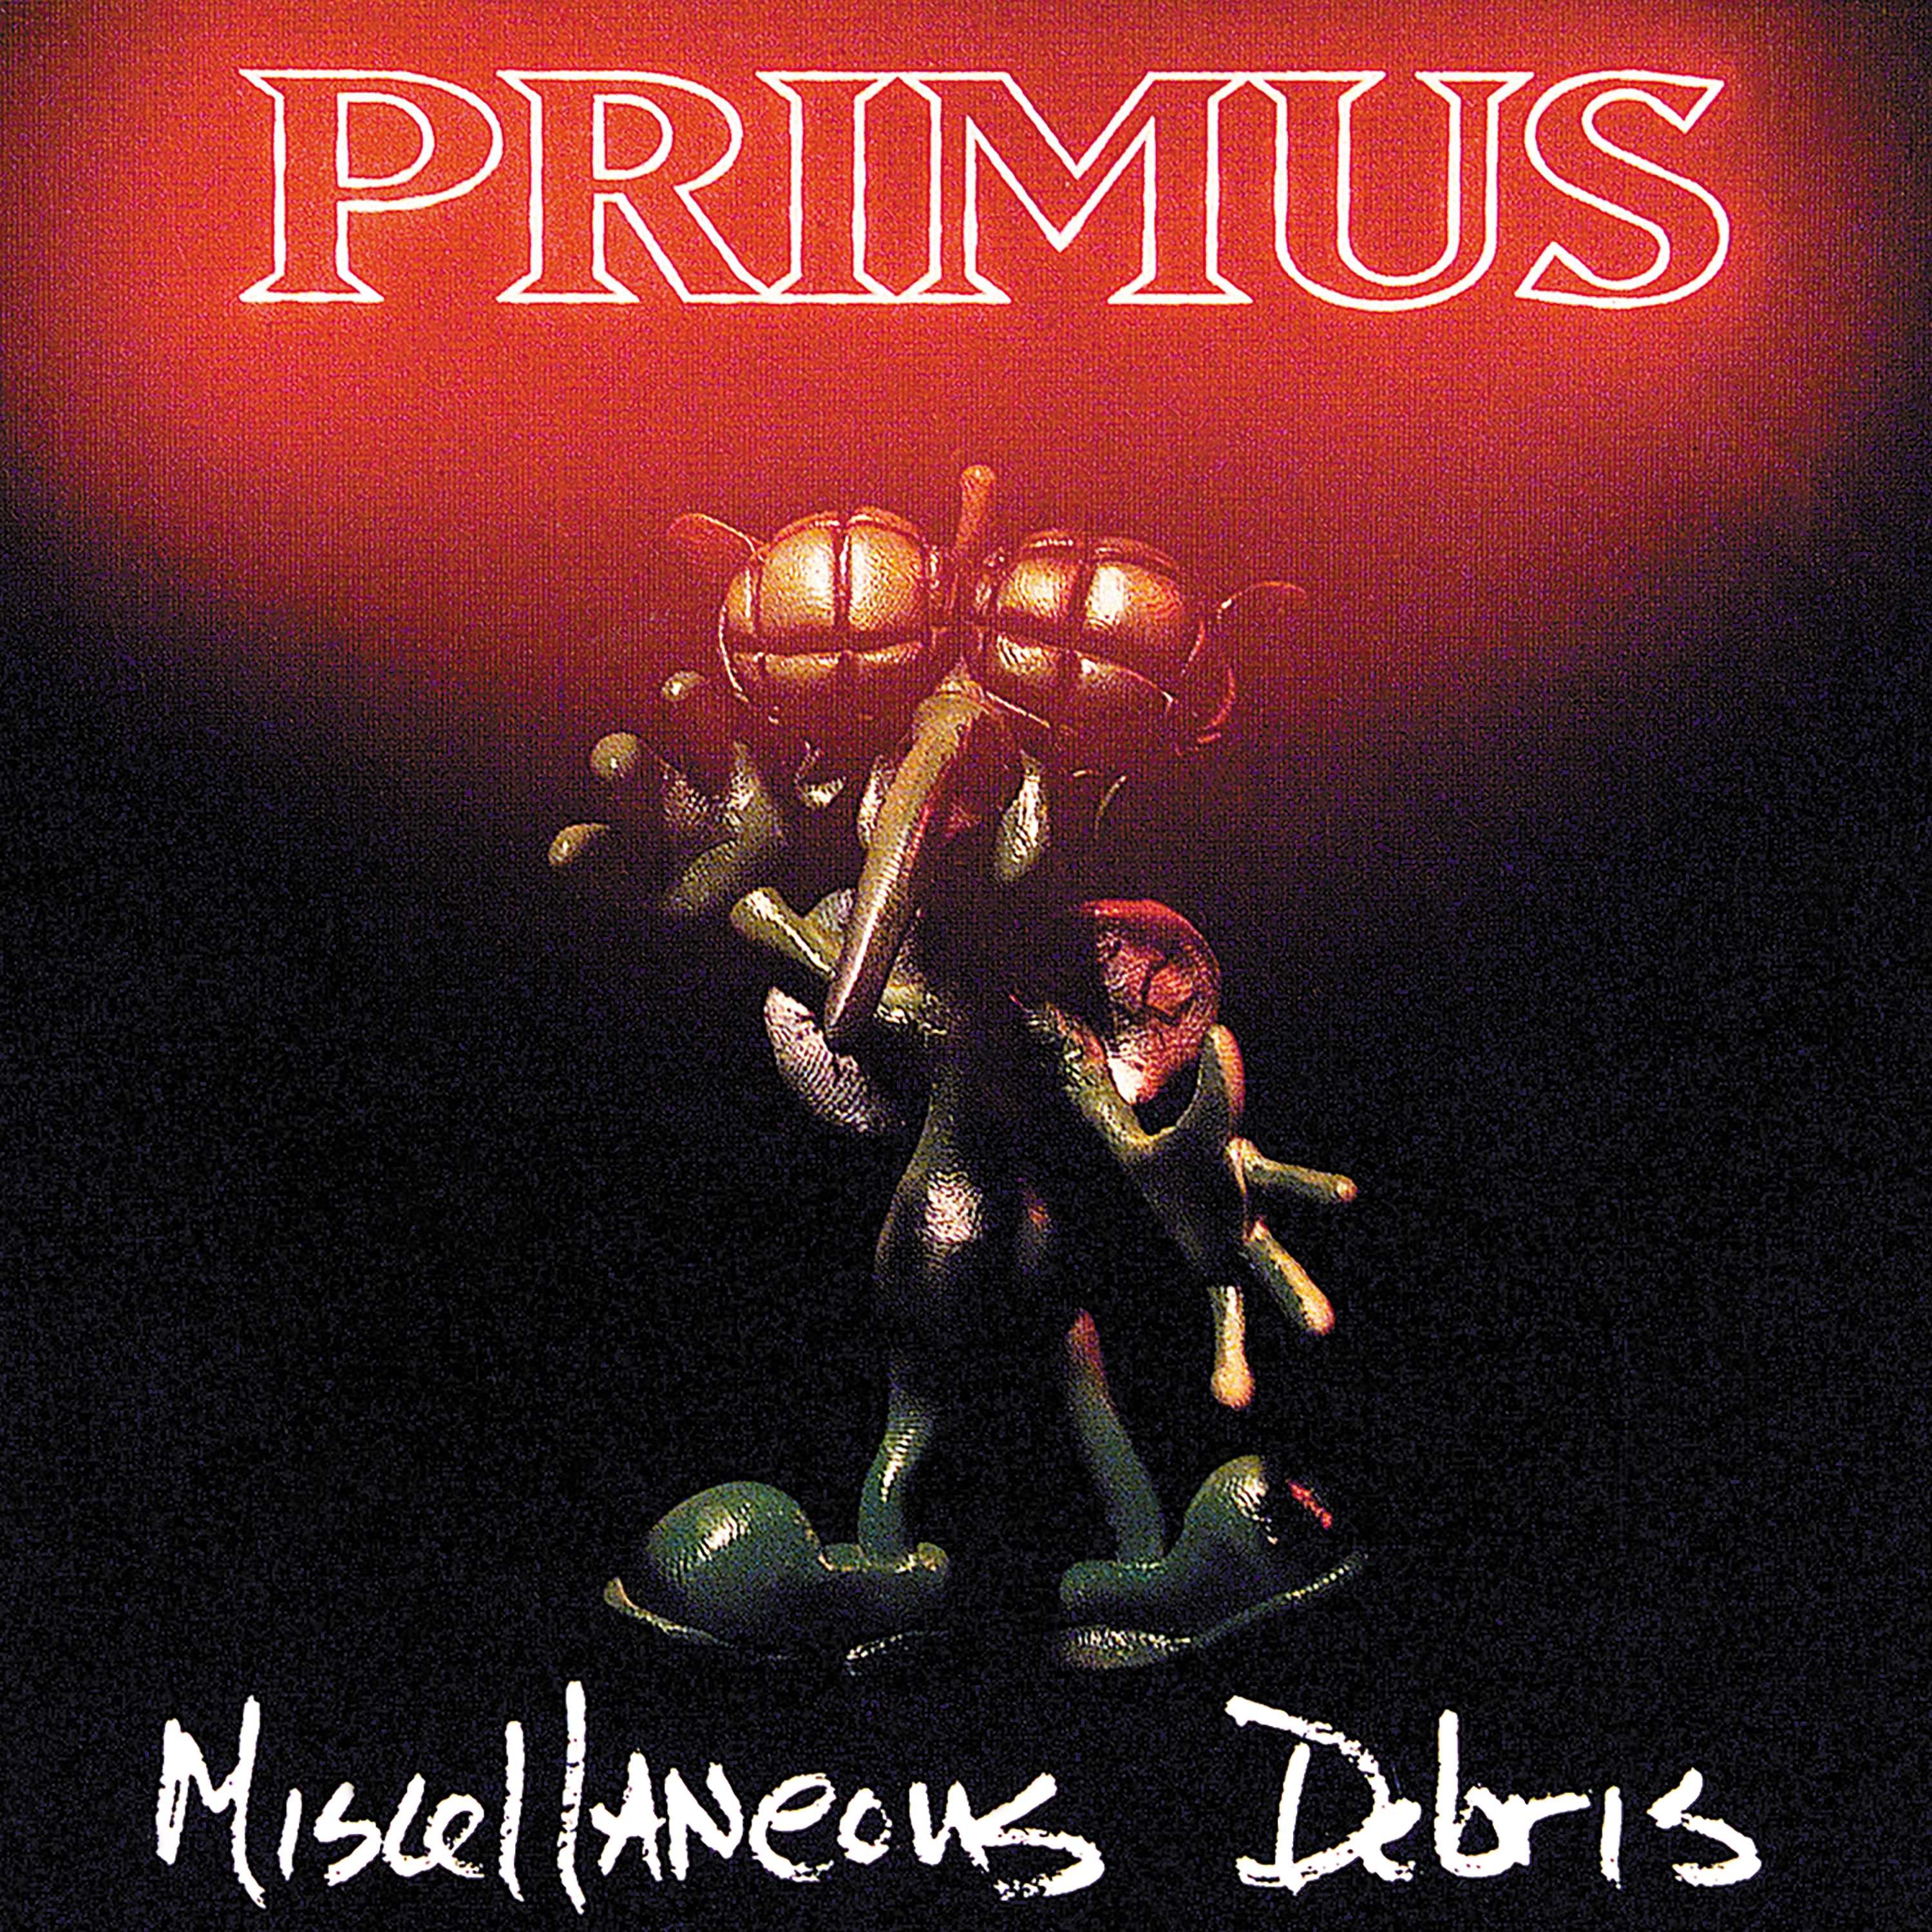 Primus - Miscellaneous Debris Vinyl LP